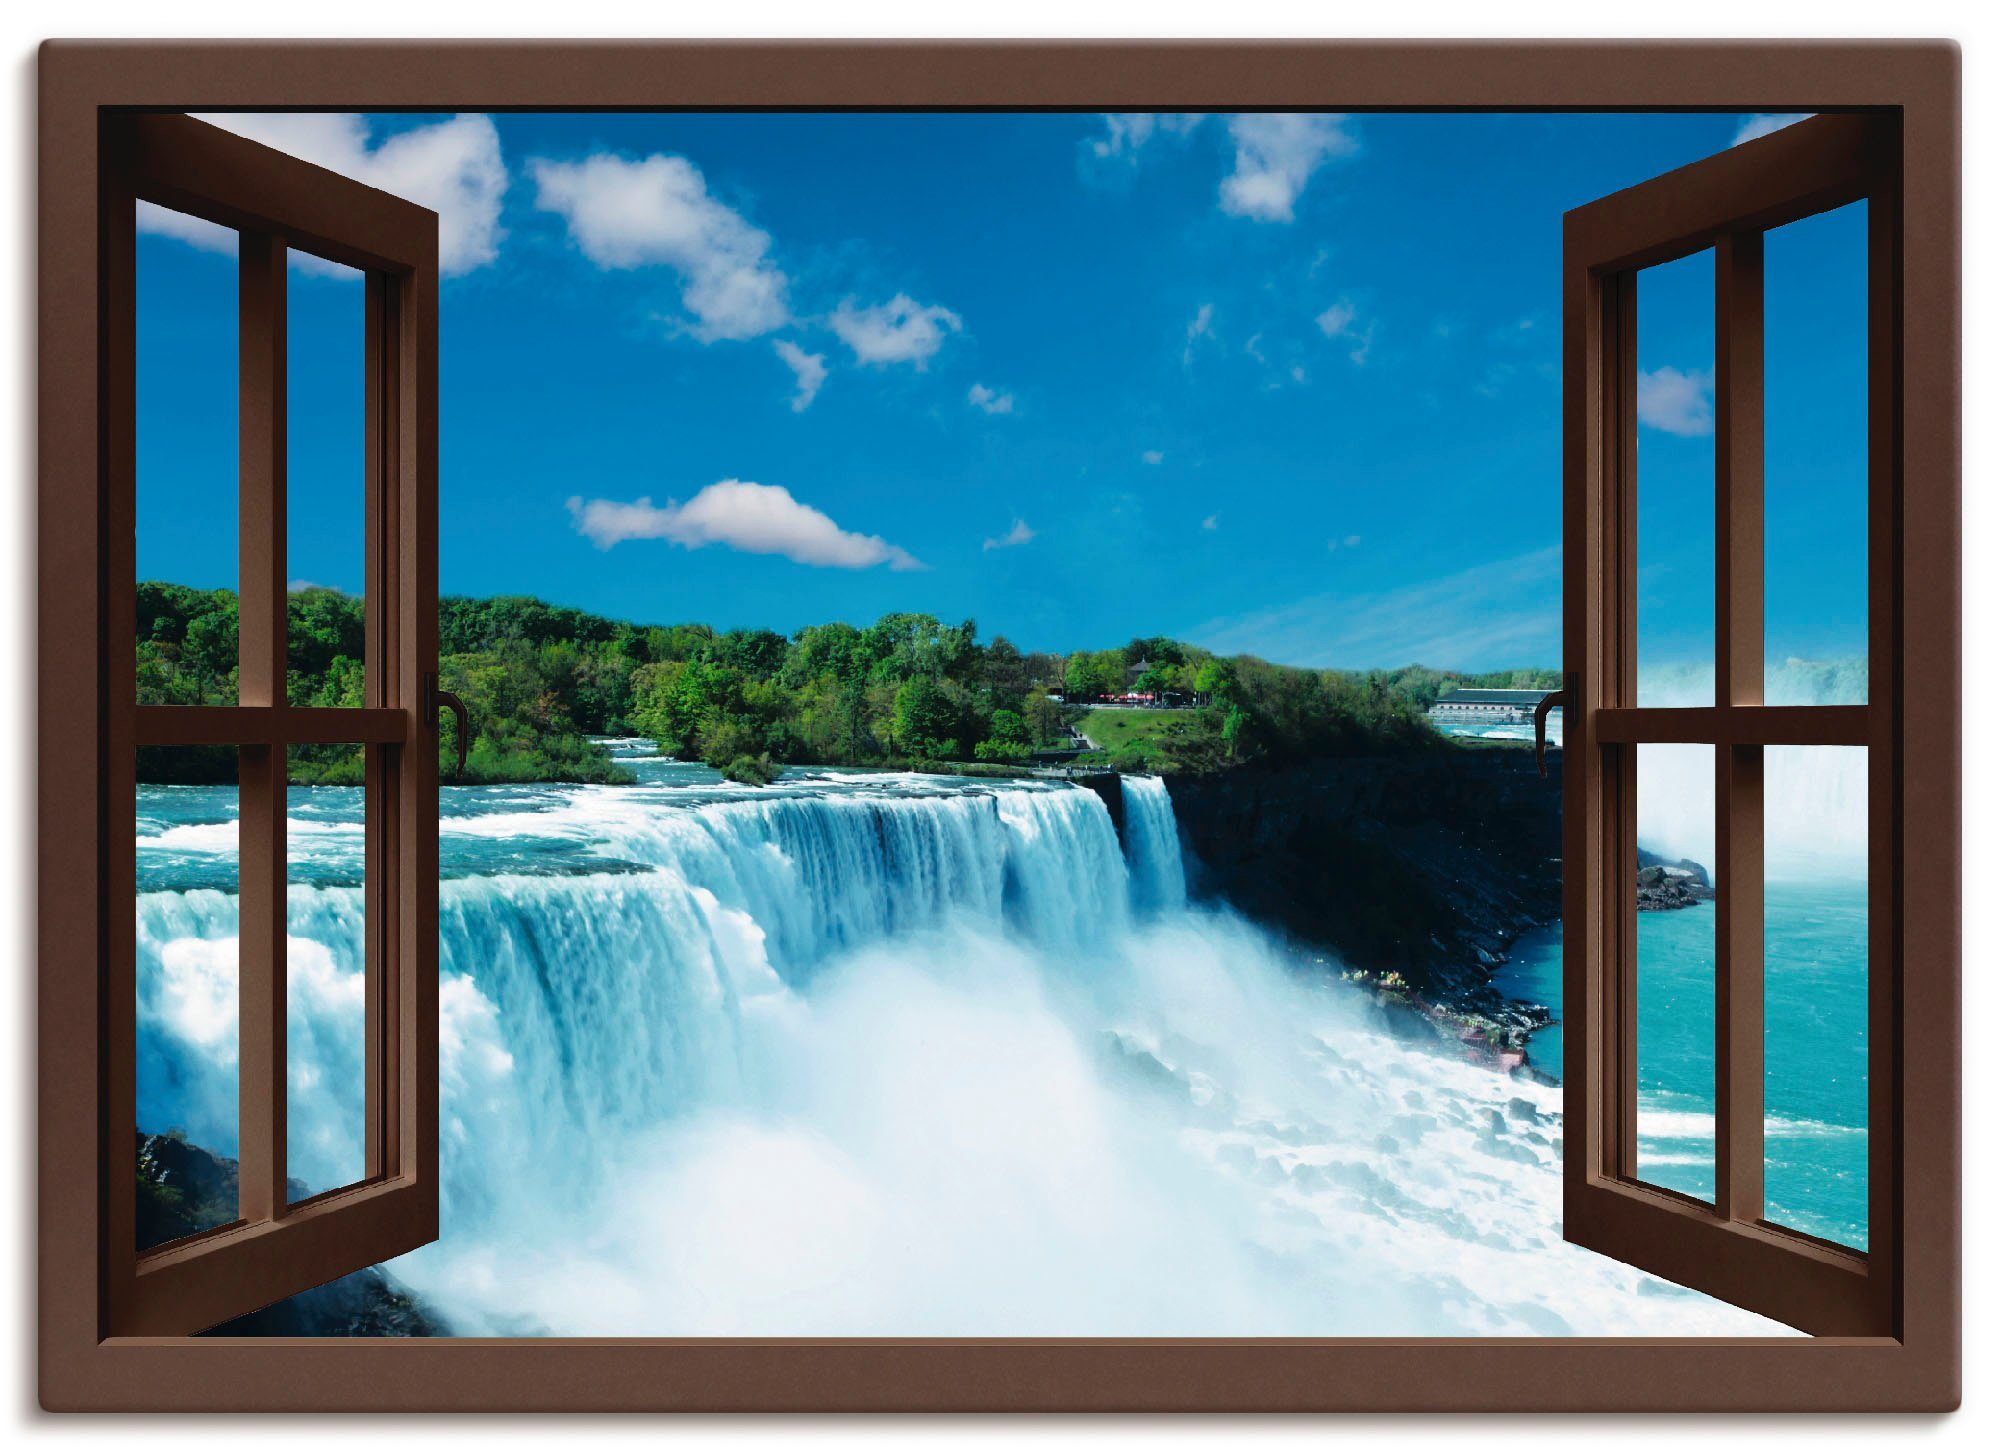 Artland Artprint Blik uit het venster - Niagara in vele afmetingen & productsoorten -artprint op linnen, poster, muursticker / wandfolie ook geschikt voor de badkamer (1 stuk)